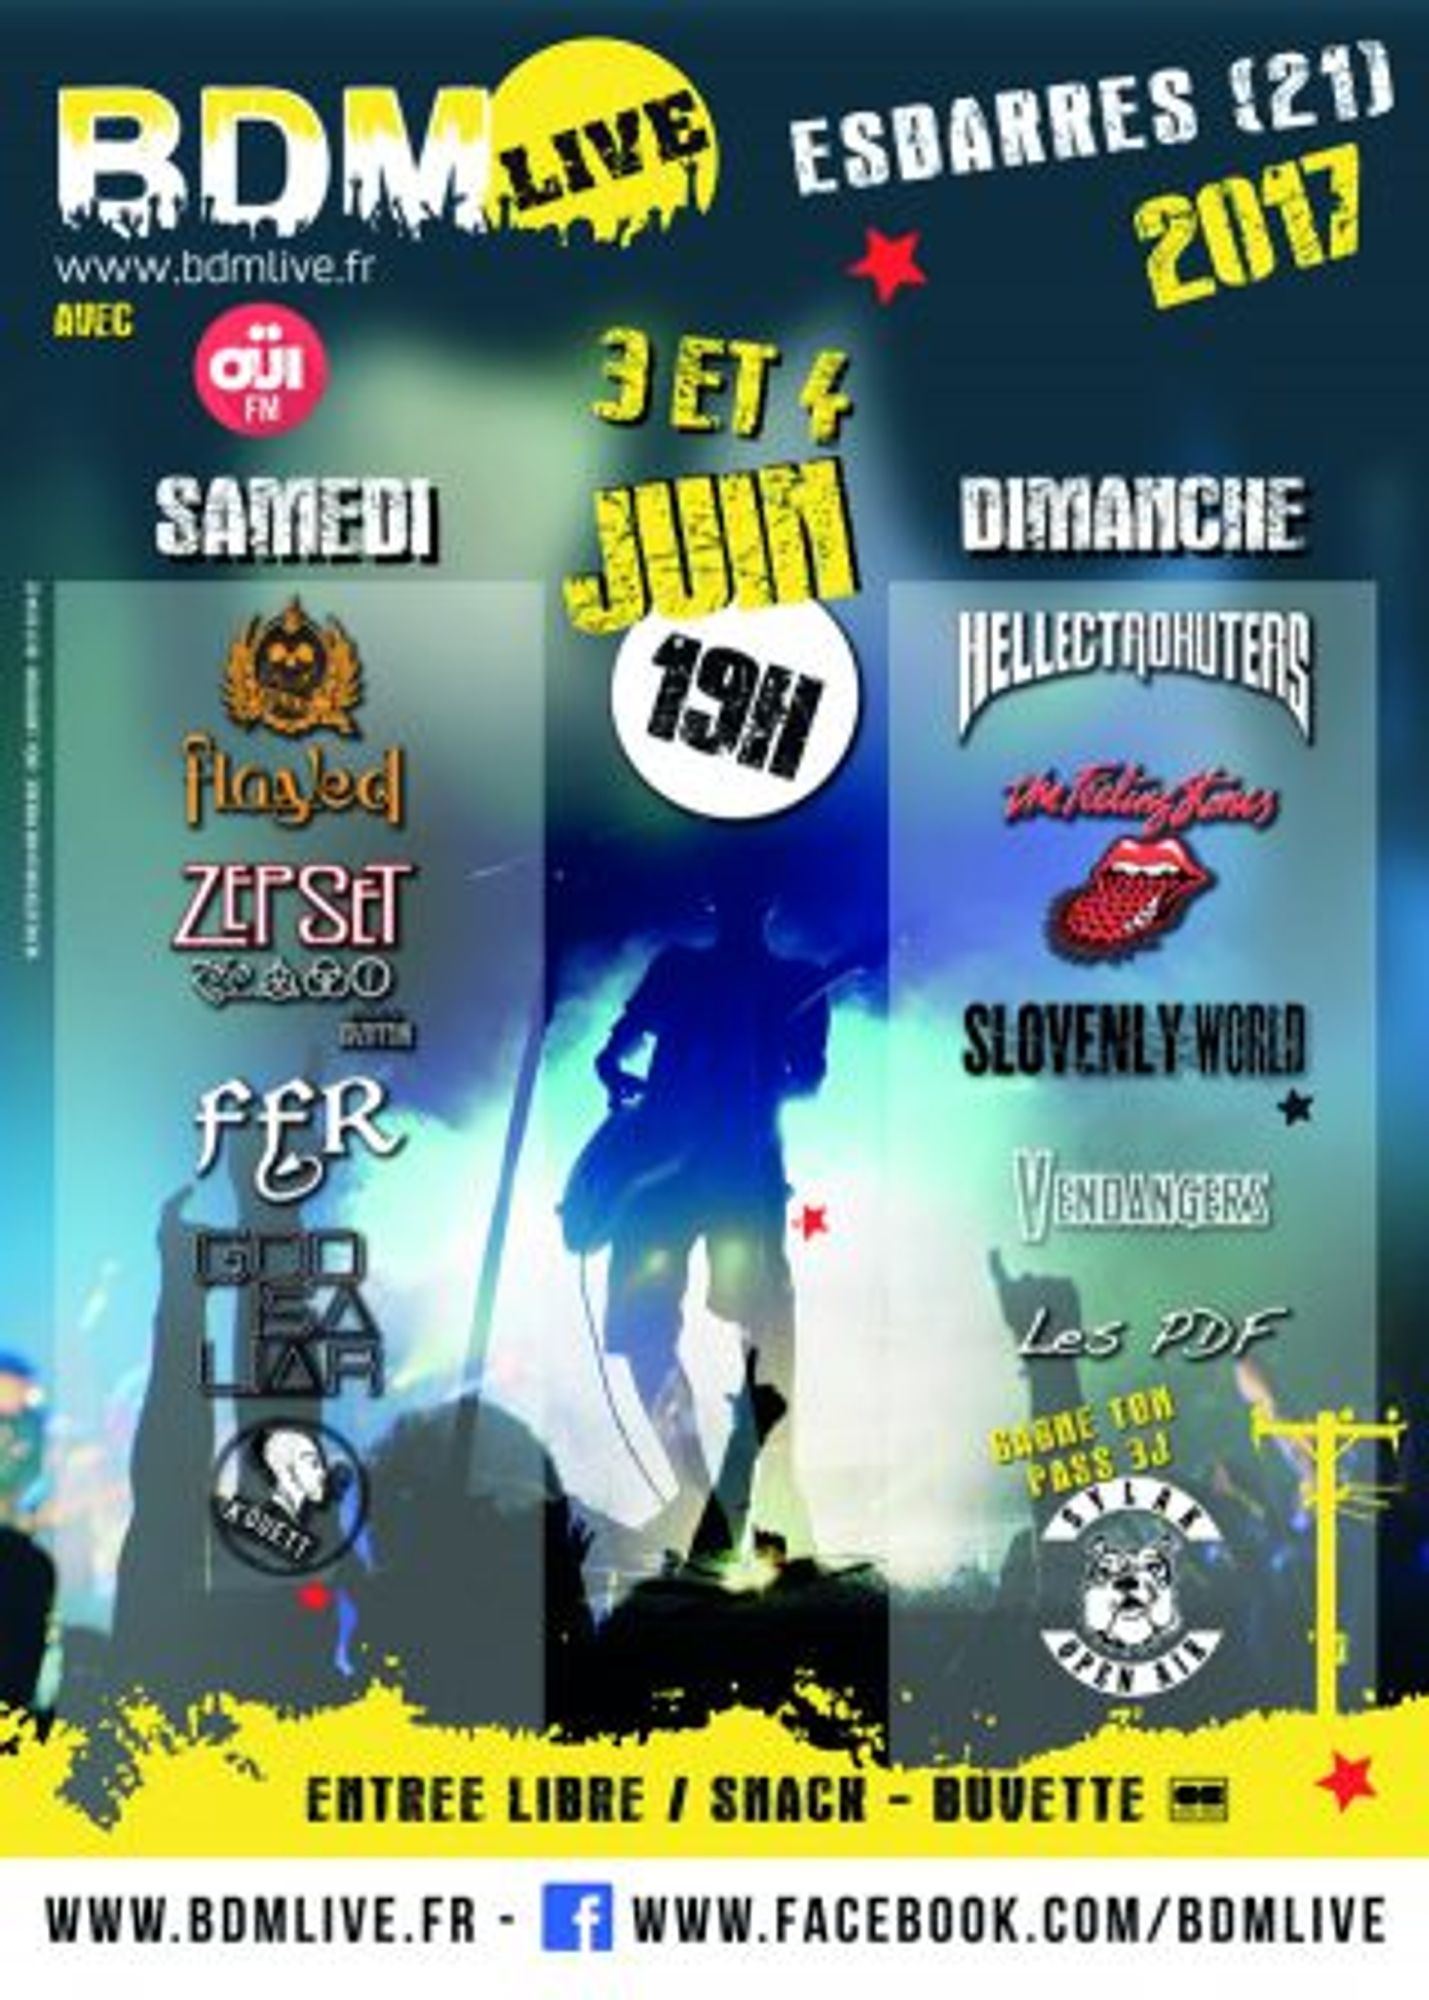 OÜI FM vous invite au BDM Festival